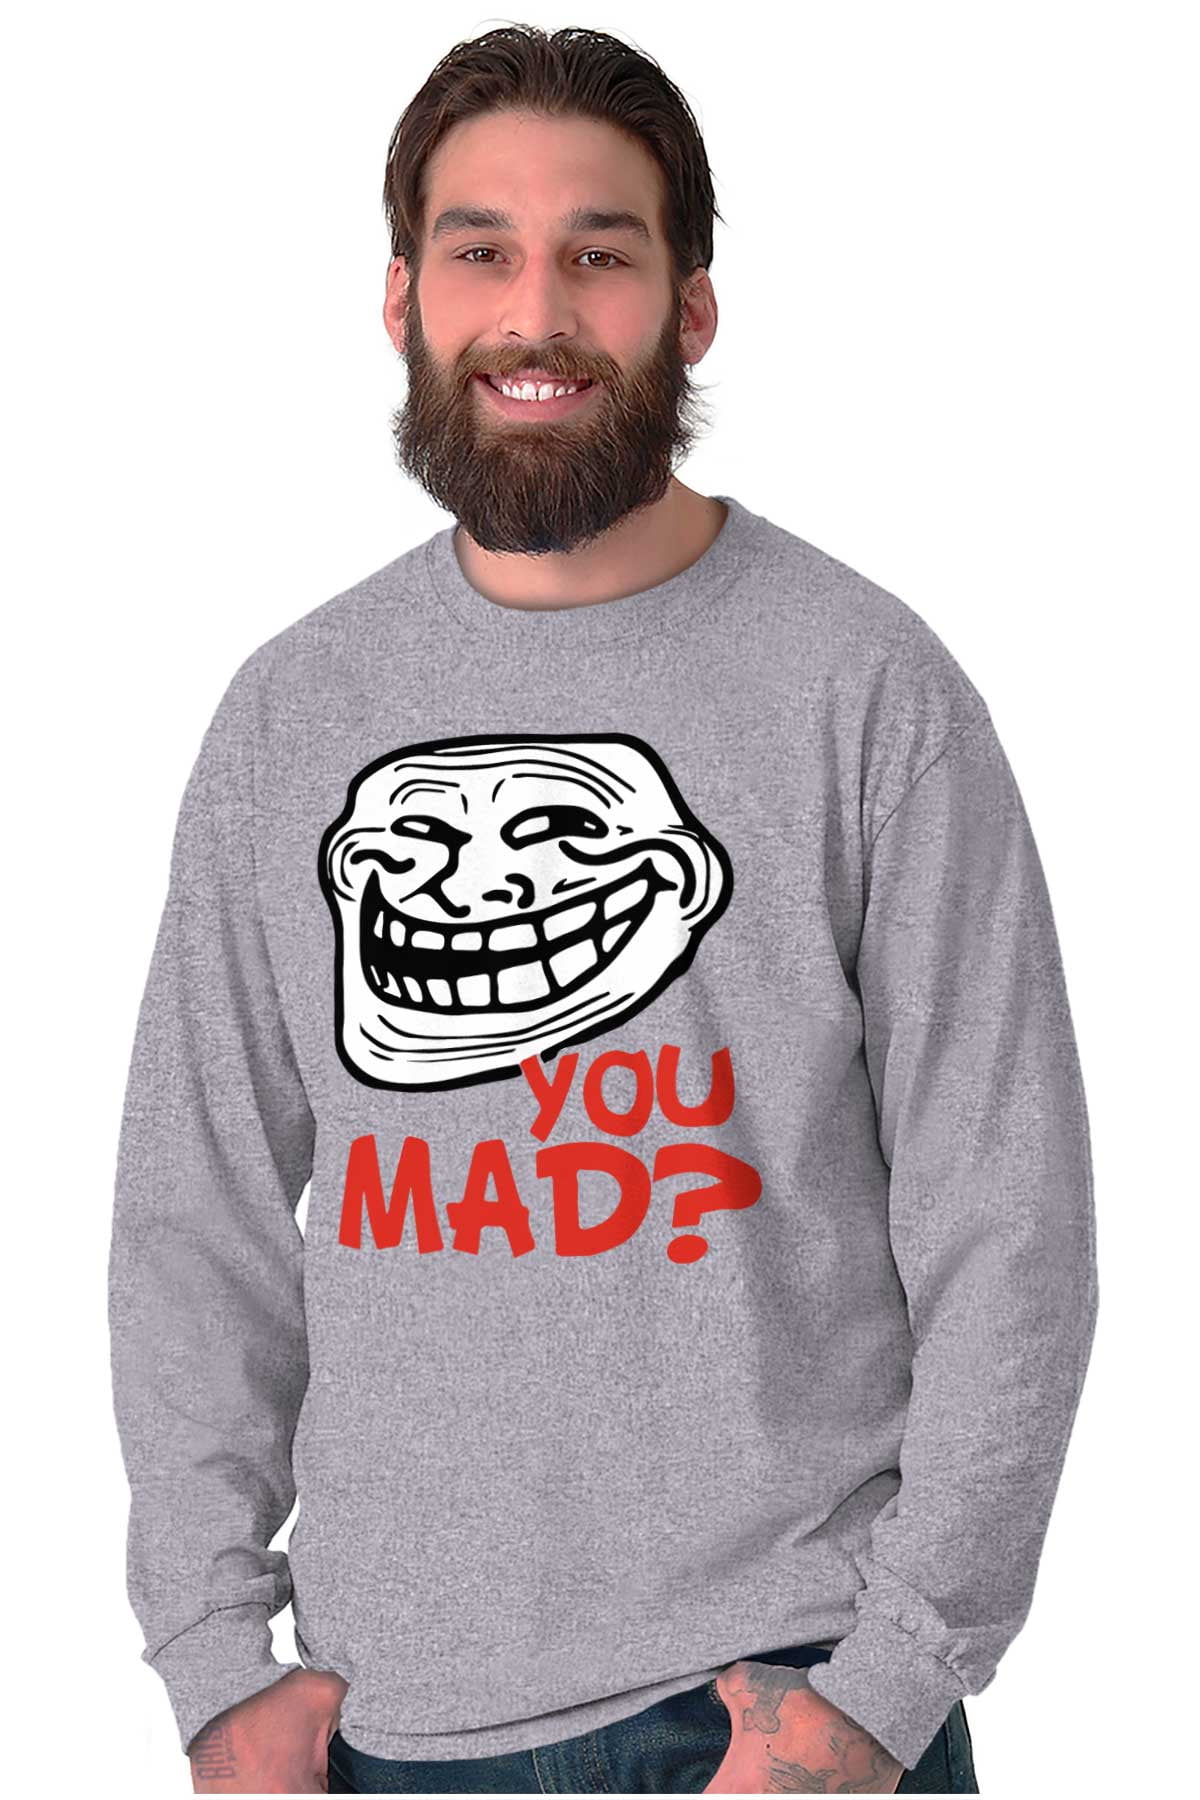 Meme Face T-Shirts for Sale